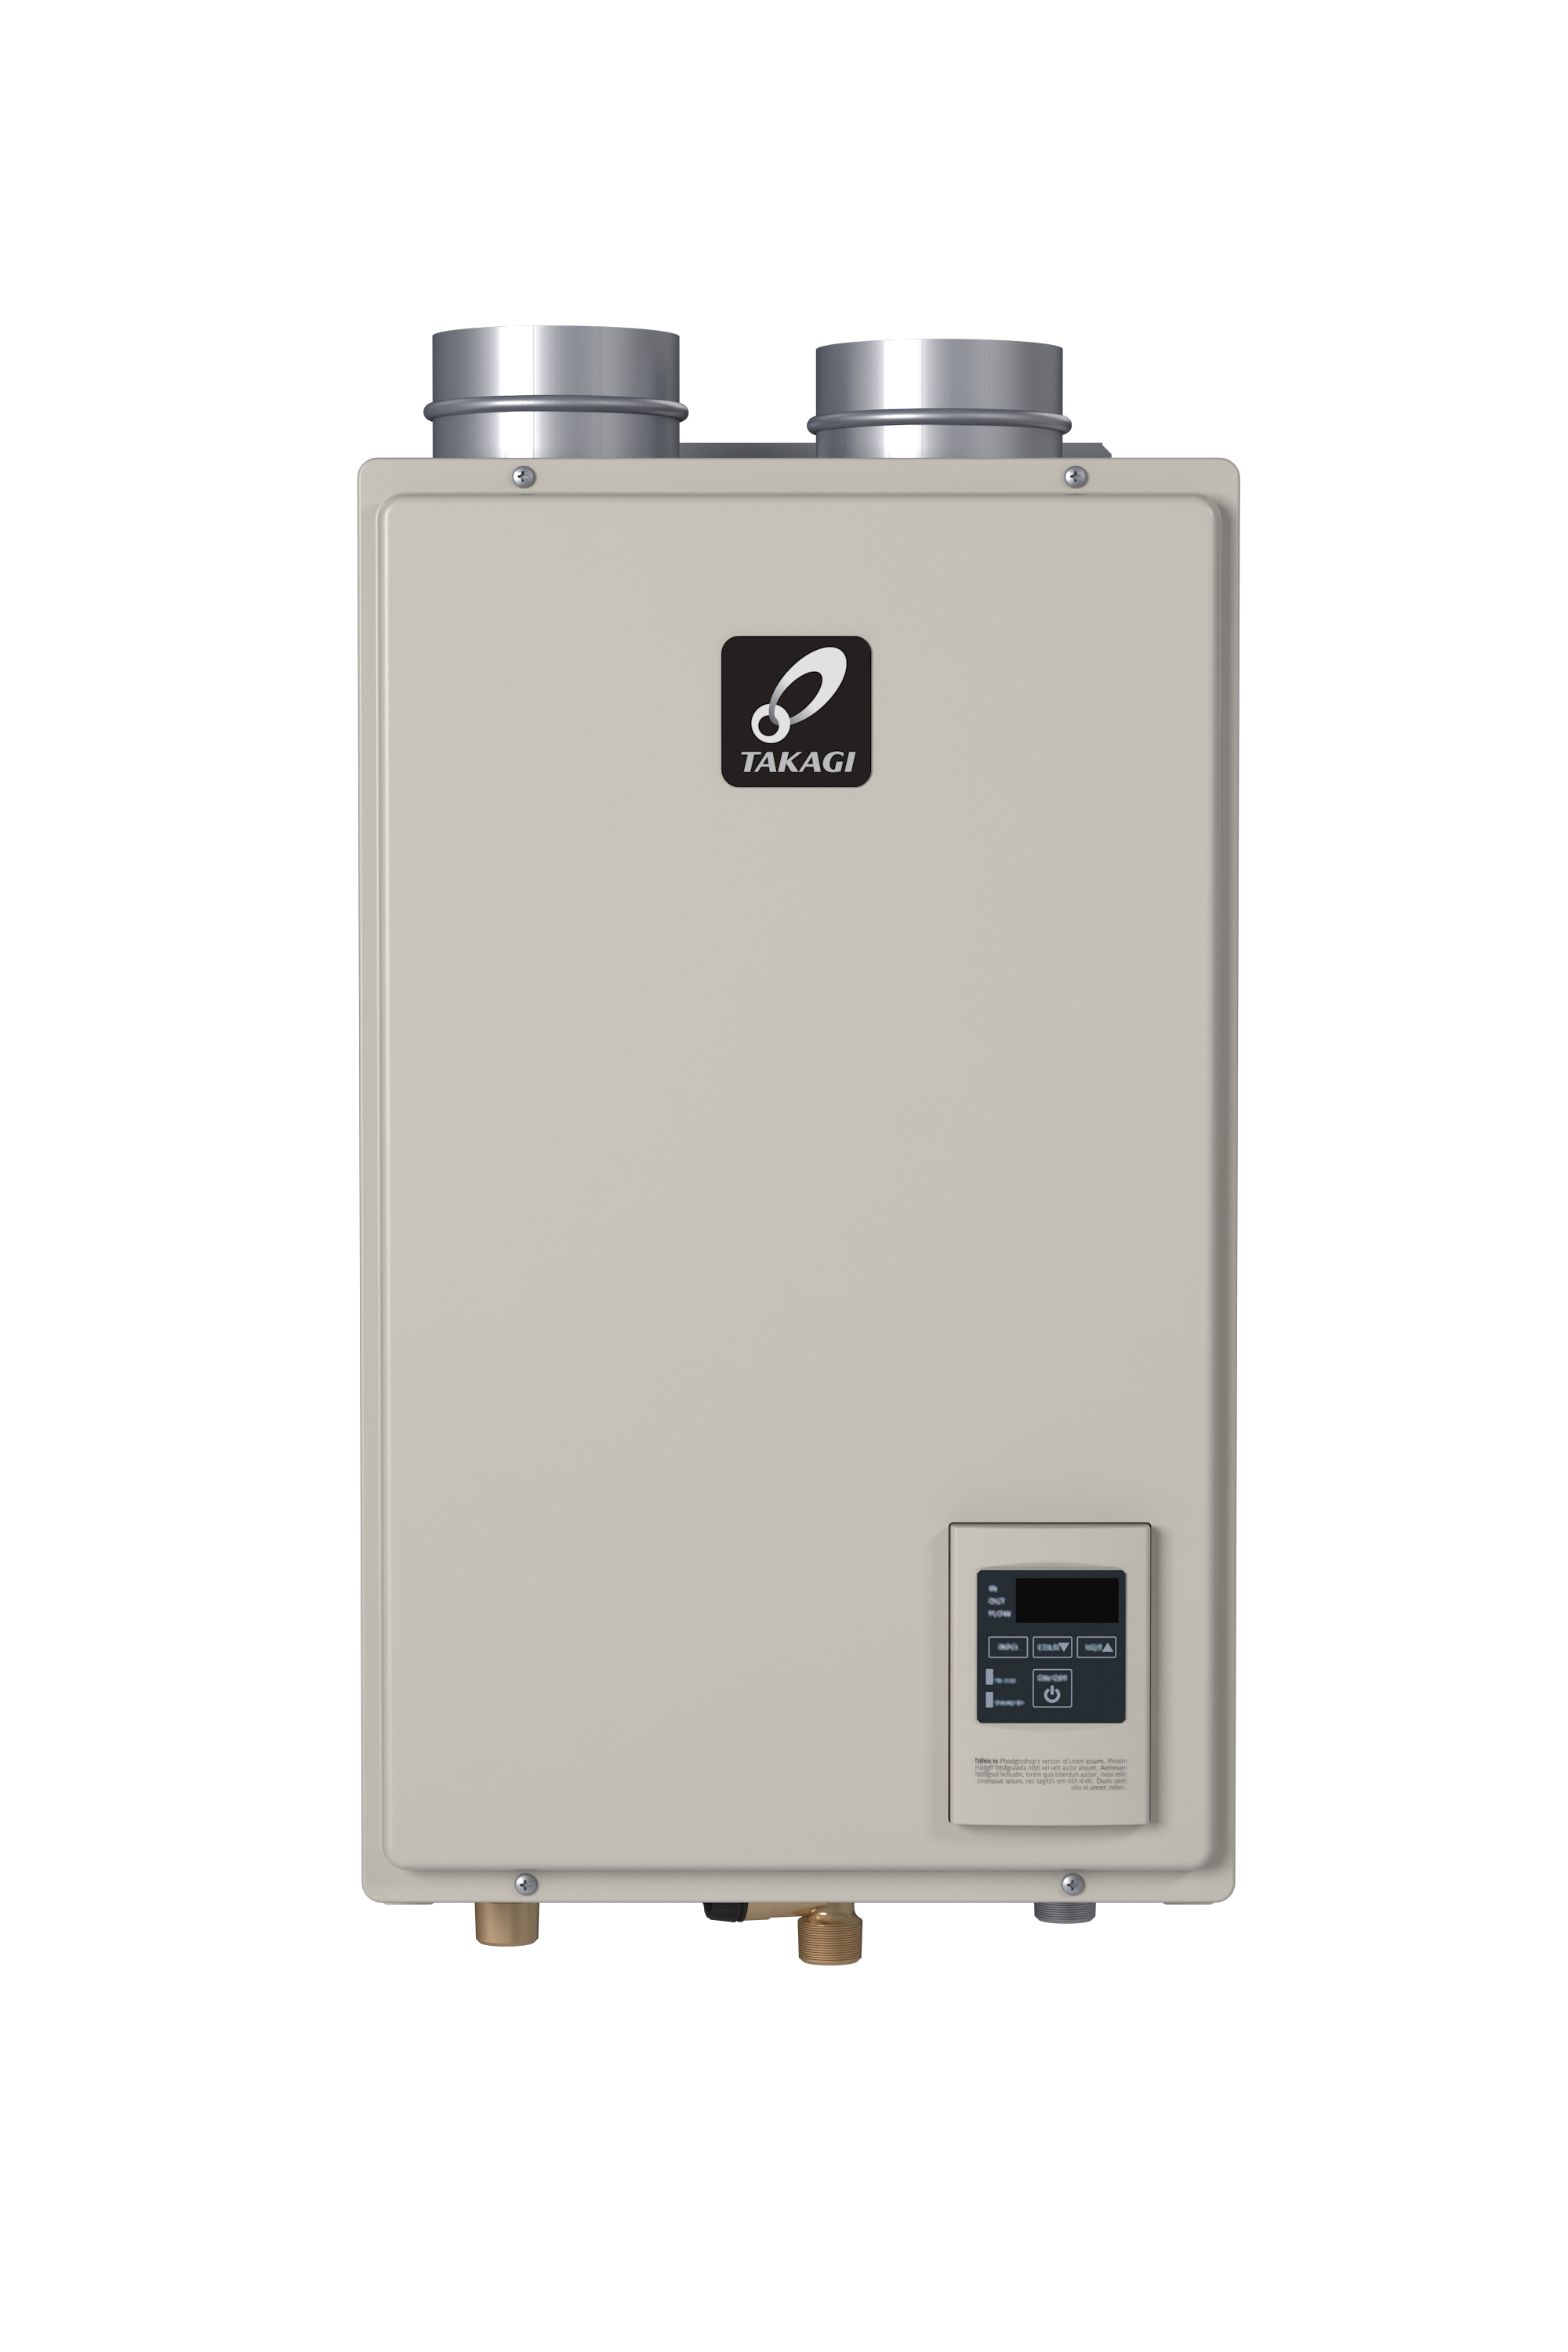 takagi-media-bank-takagi-tankless-water-heaters-endless-hot-water